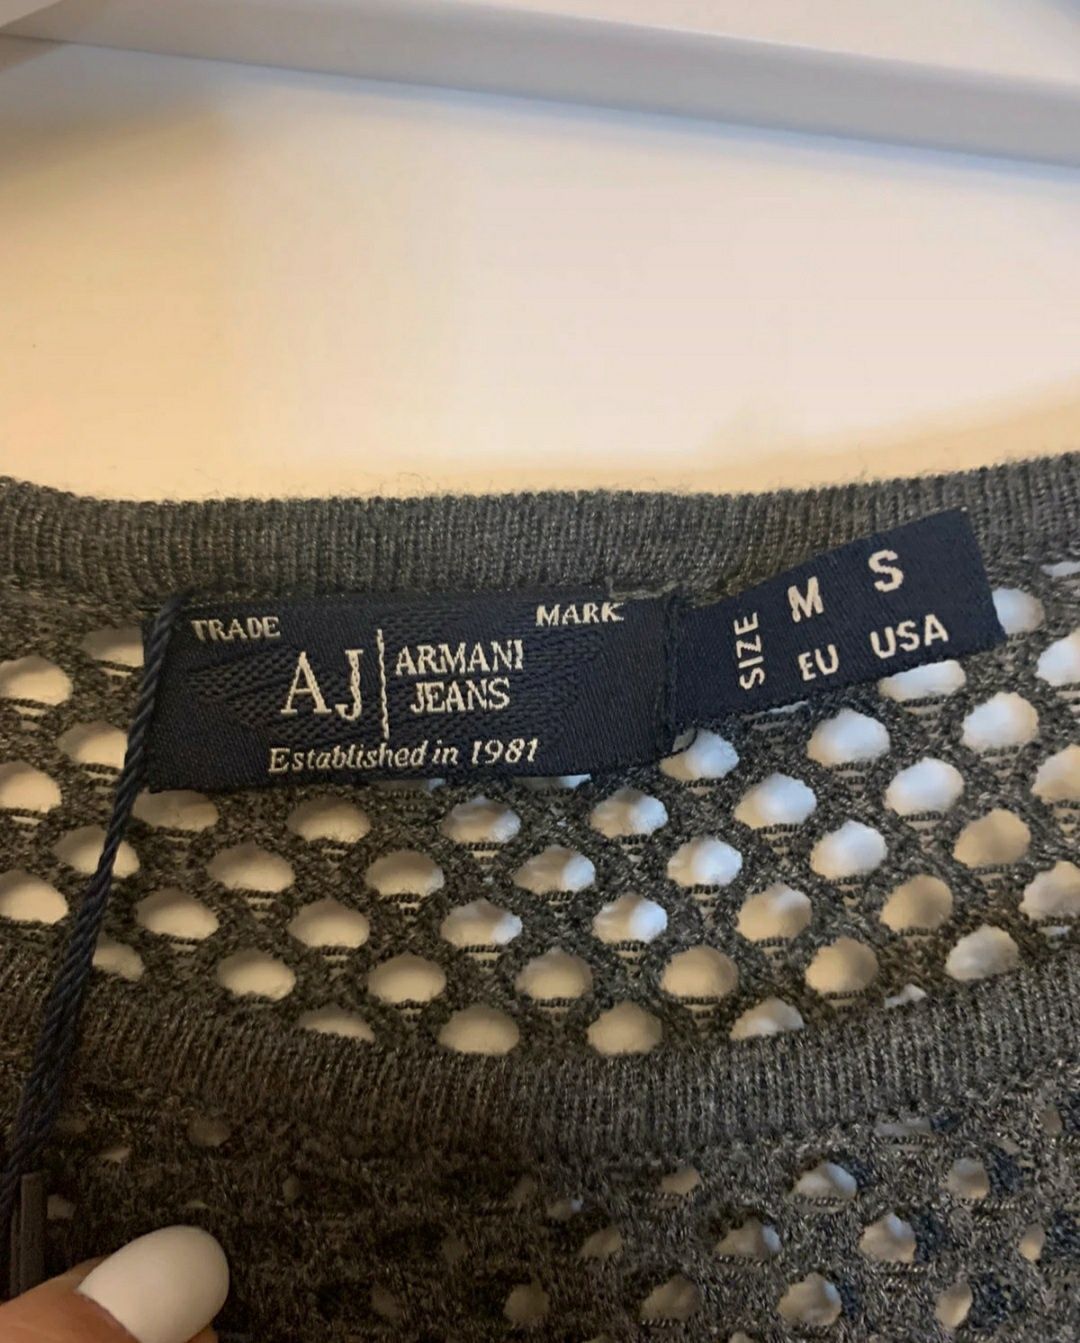 Armani jeans S/M sukienka szara nowa tunika antracyt